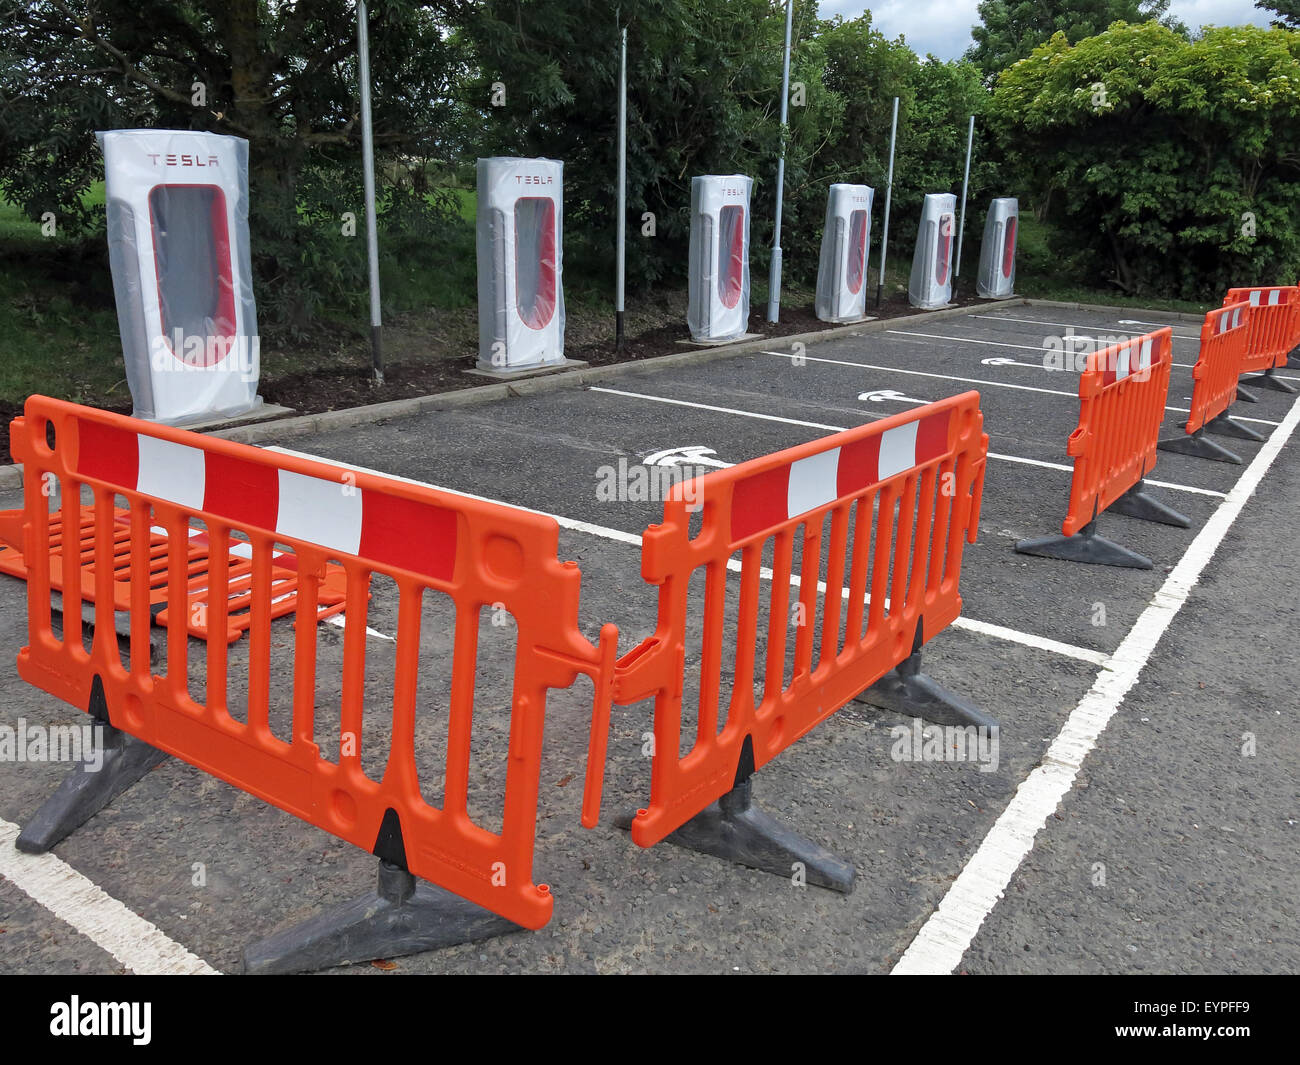 Points de charge Tesla mis en œuvre sur une zone de service sur autoroute au Royaume-Uni, avec des barrières autour de Banque D'Images